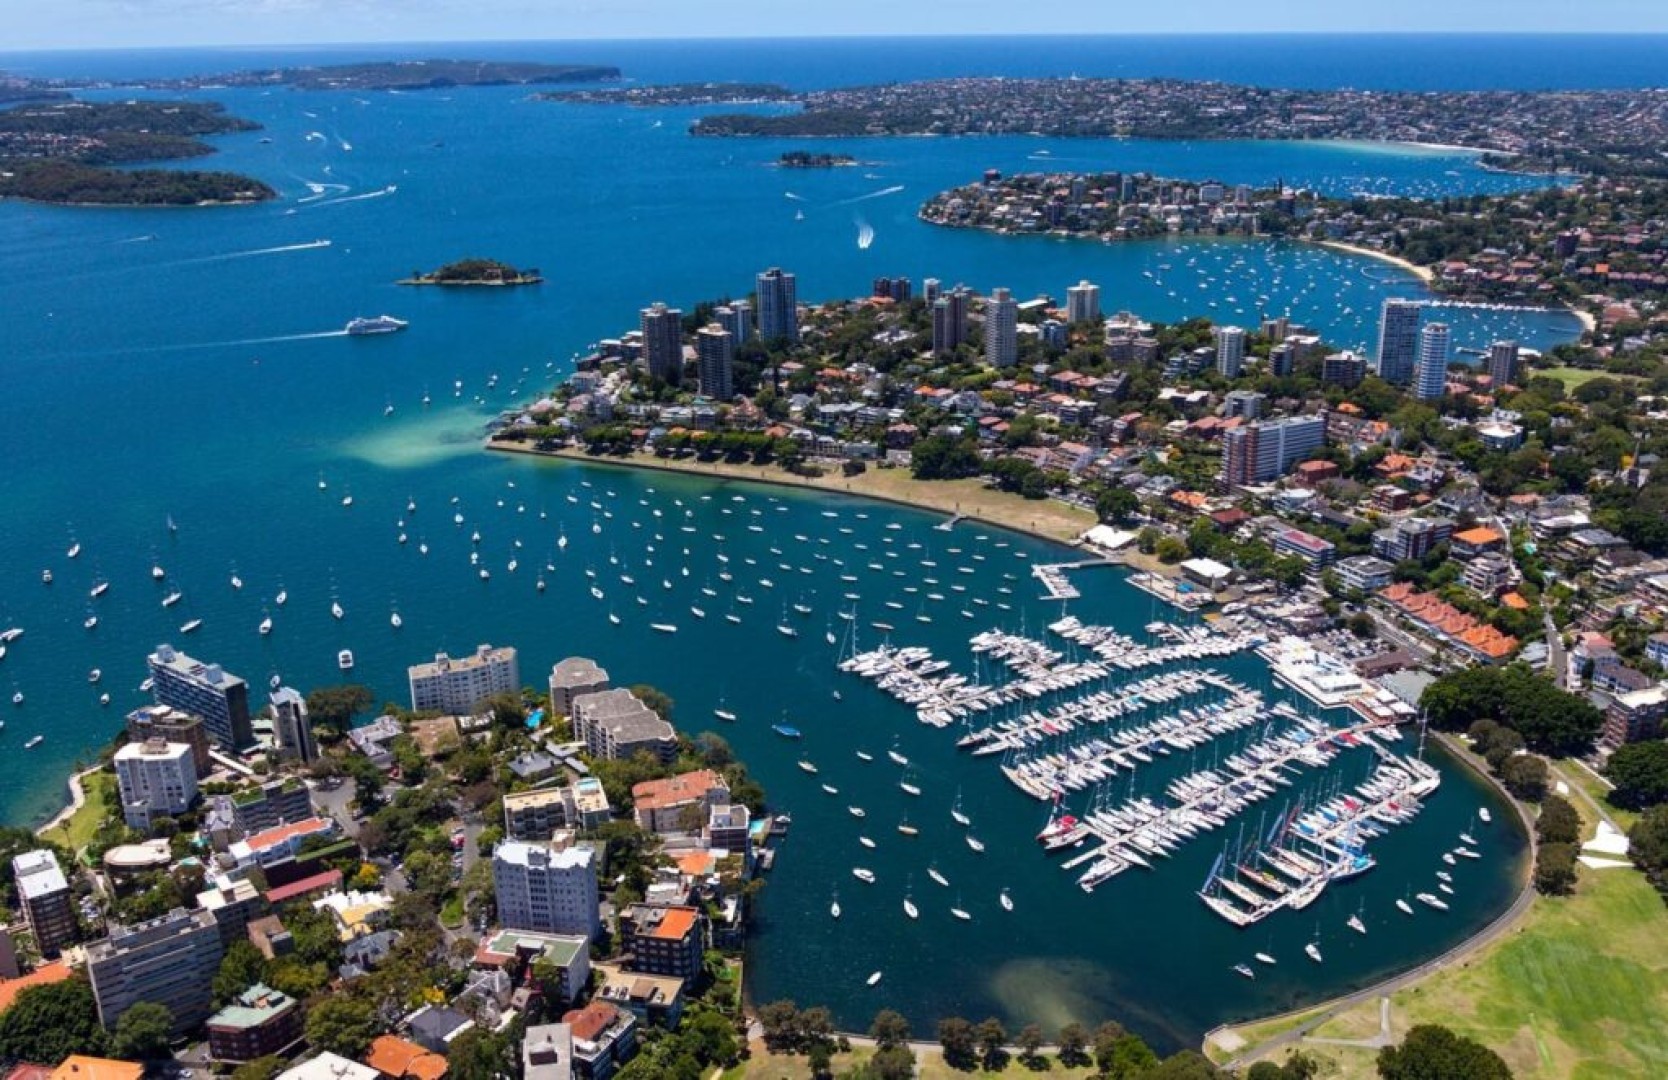 Crusing Yacht Club of Australia, Sydney